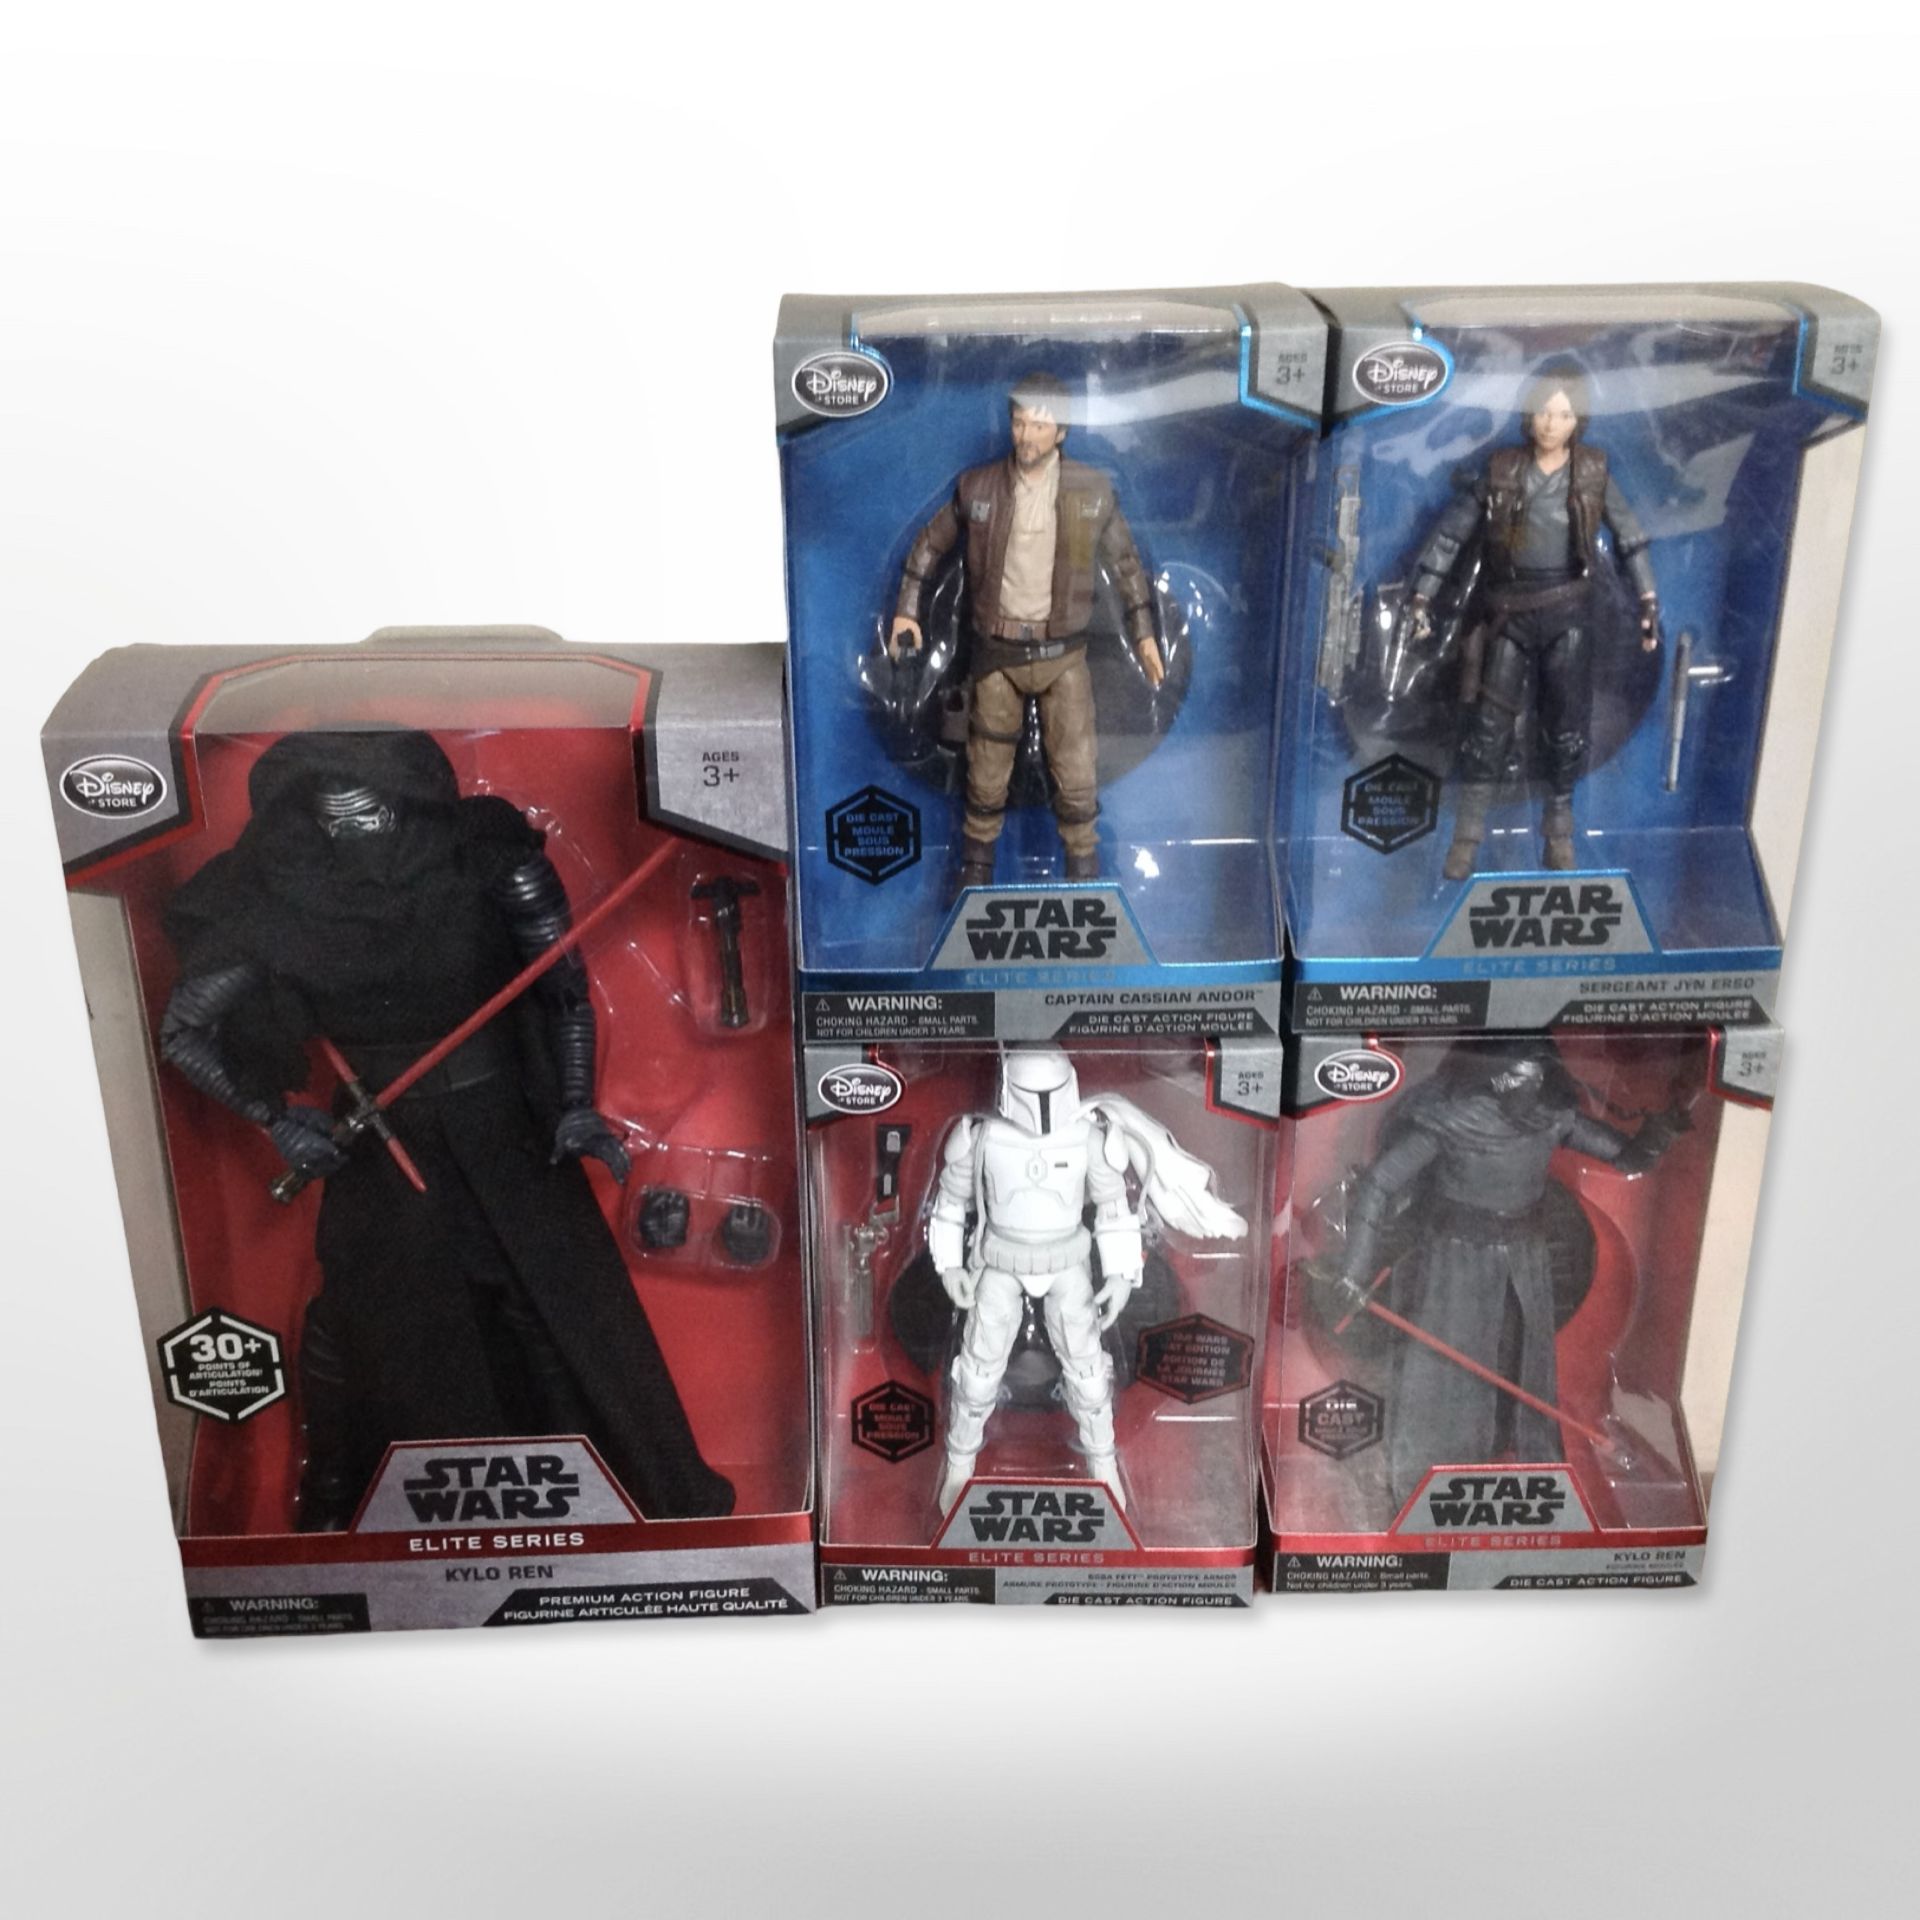 Five Disney Store Star Wars figures,